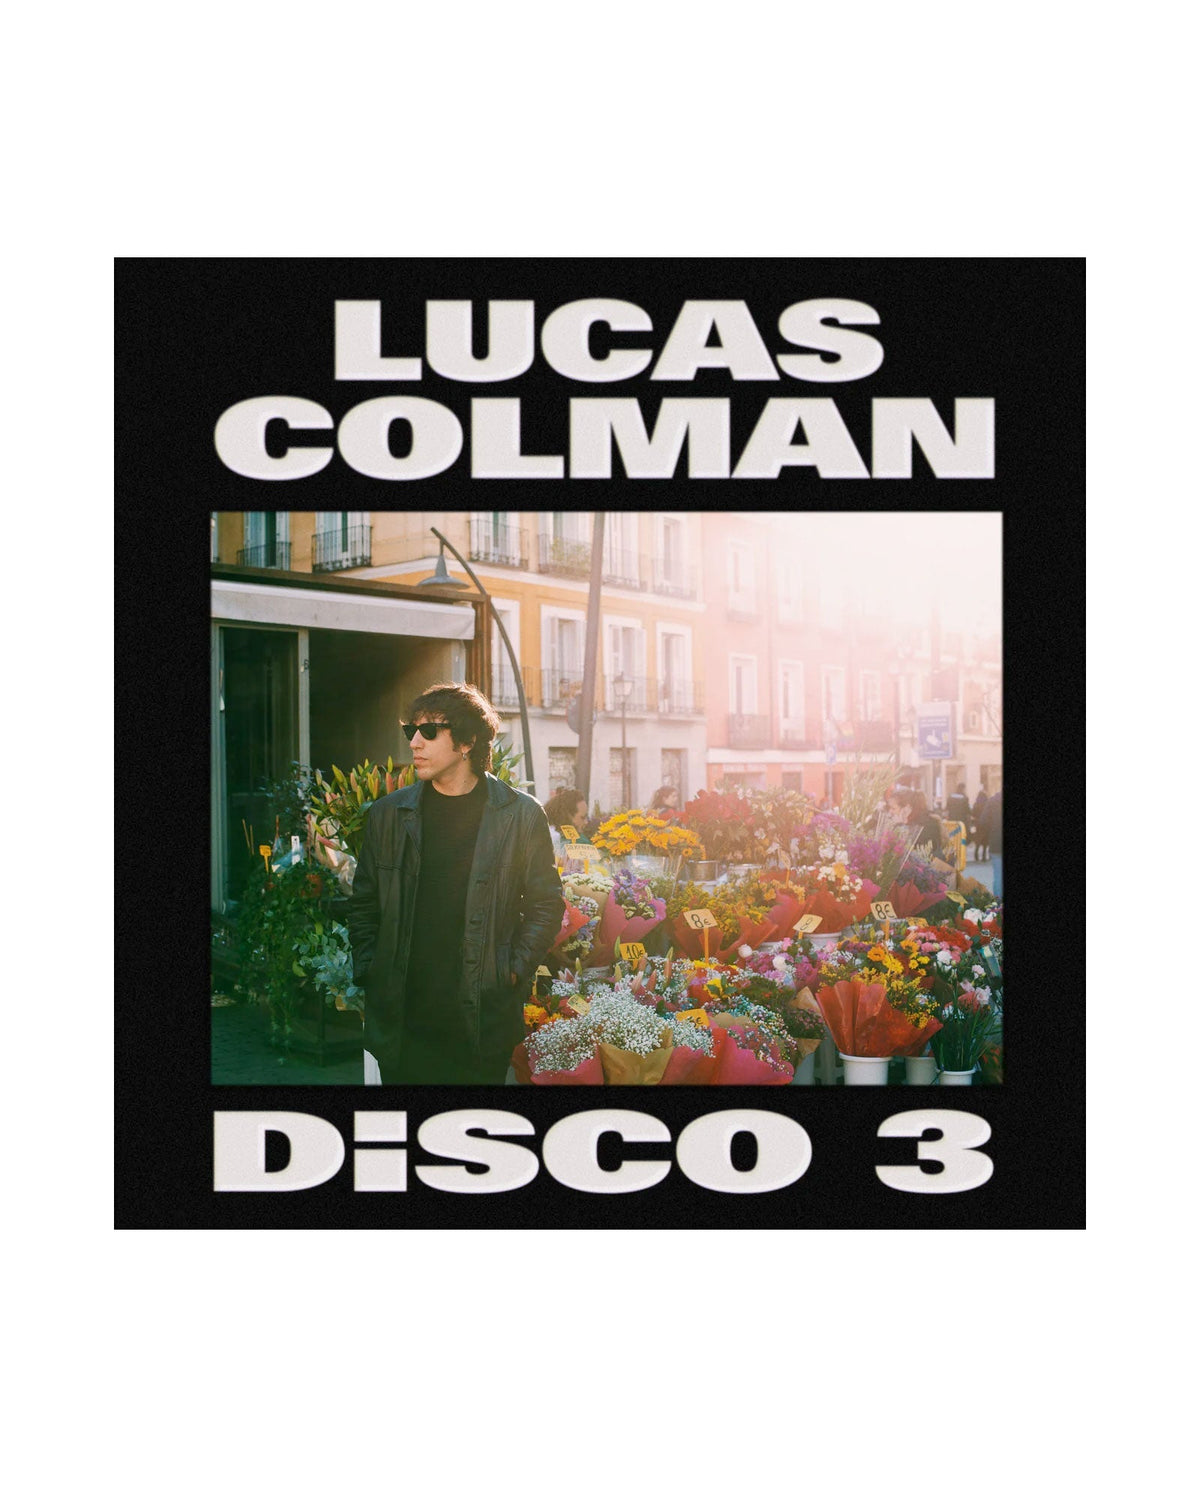 Lucas Colman - CD Firmado "Disco 3" - D2fy · Rocktud - Metales Preciosos